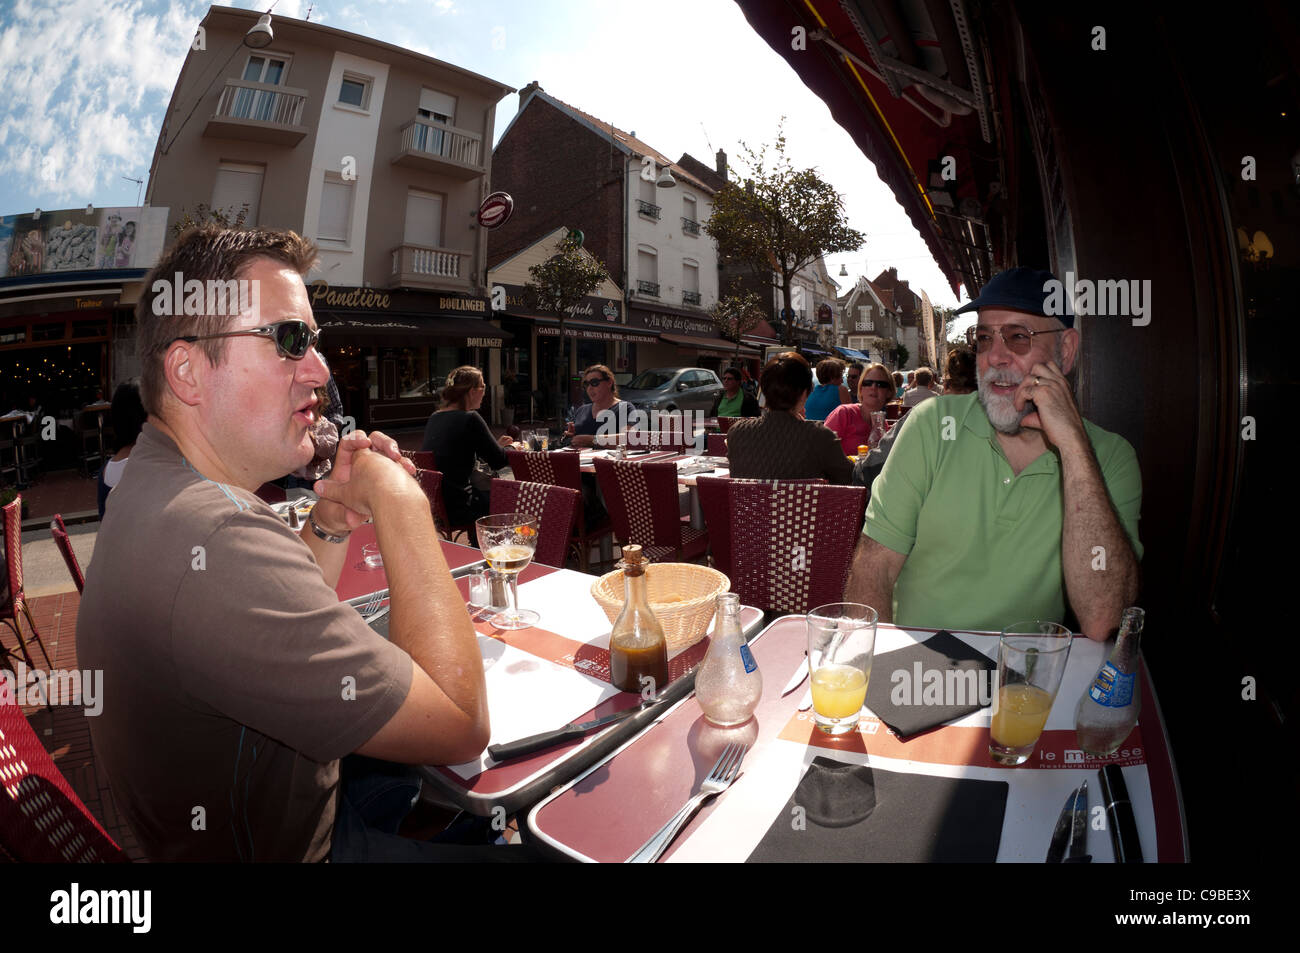 Les gens assis se détendre boire et manger dans un café de la rue chaussée français extérieur à Le touquet France Banque D'Images